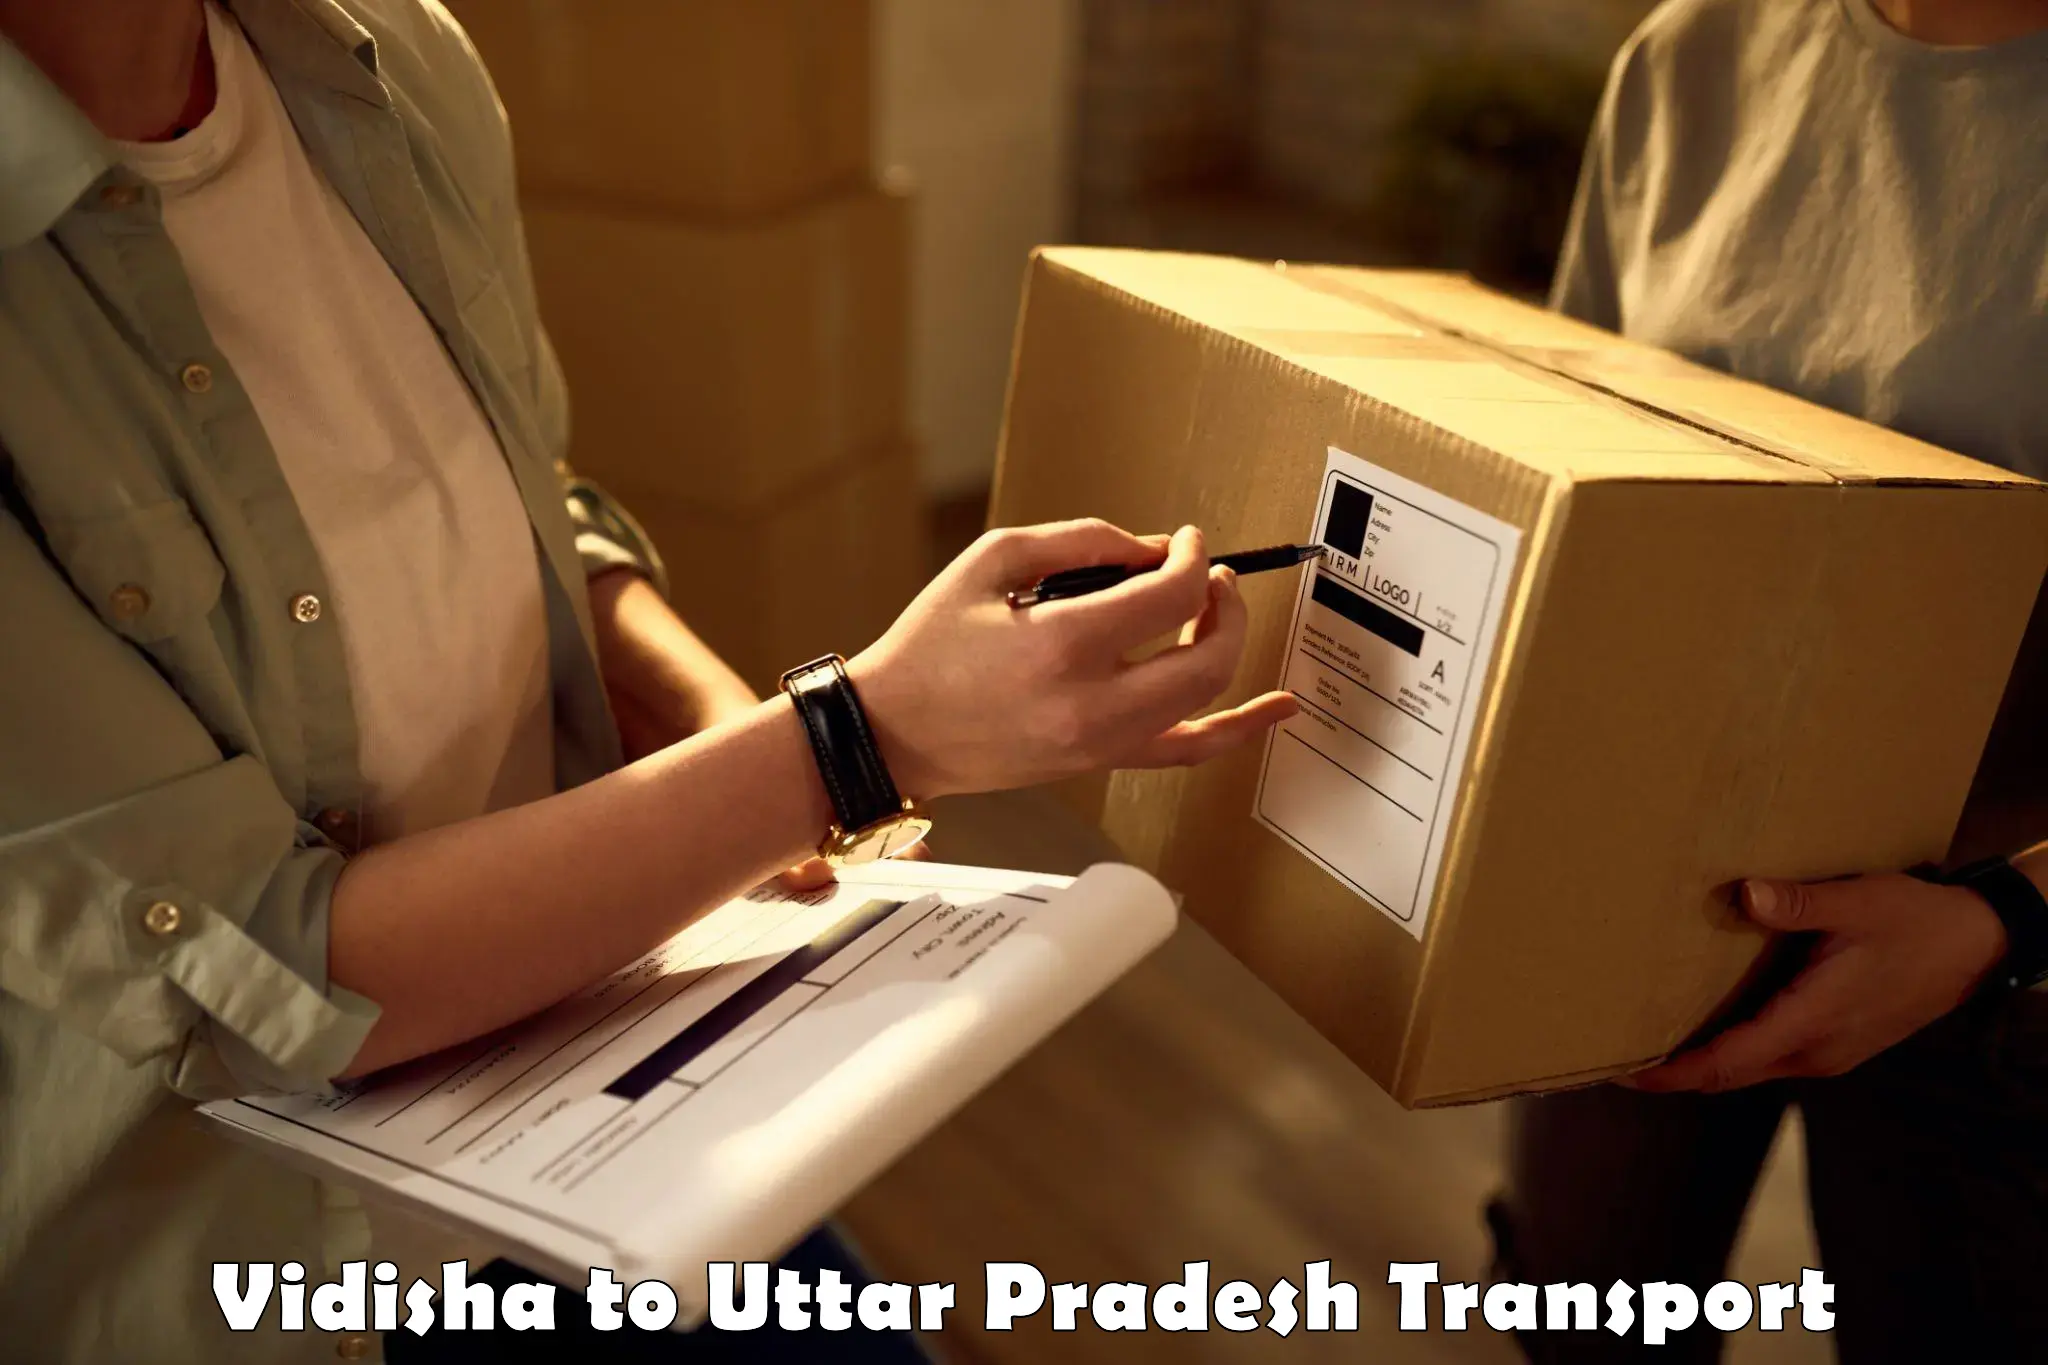 Goods delivery service Vidisha to Varanasi